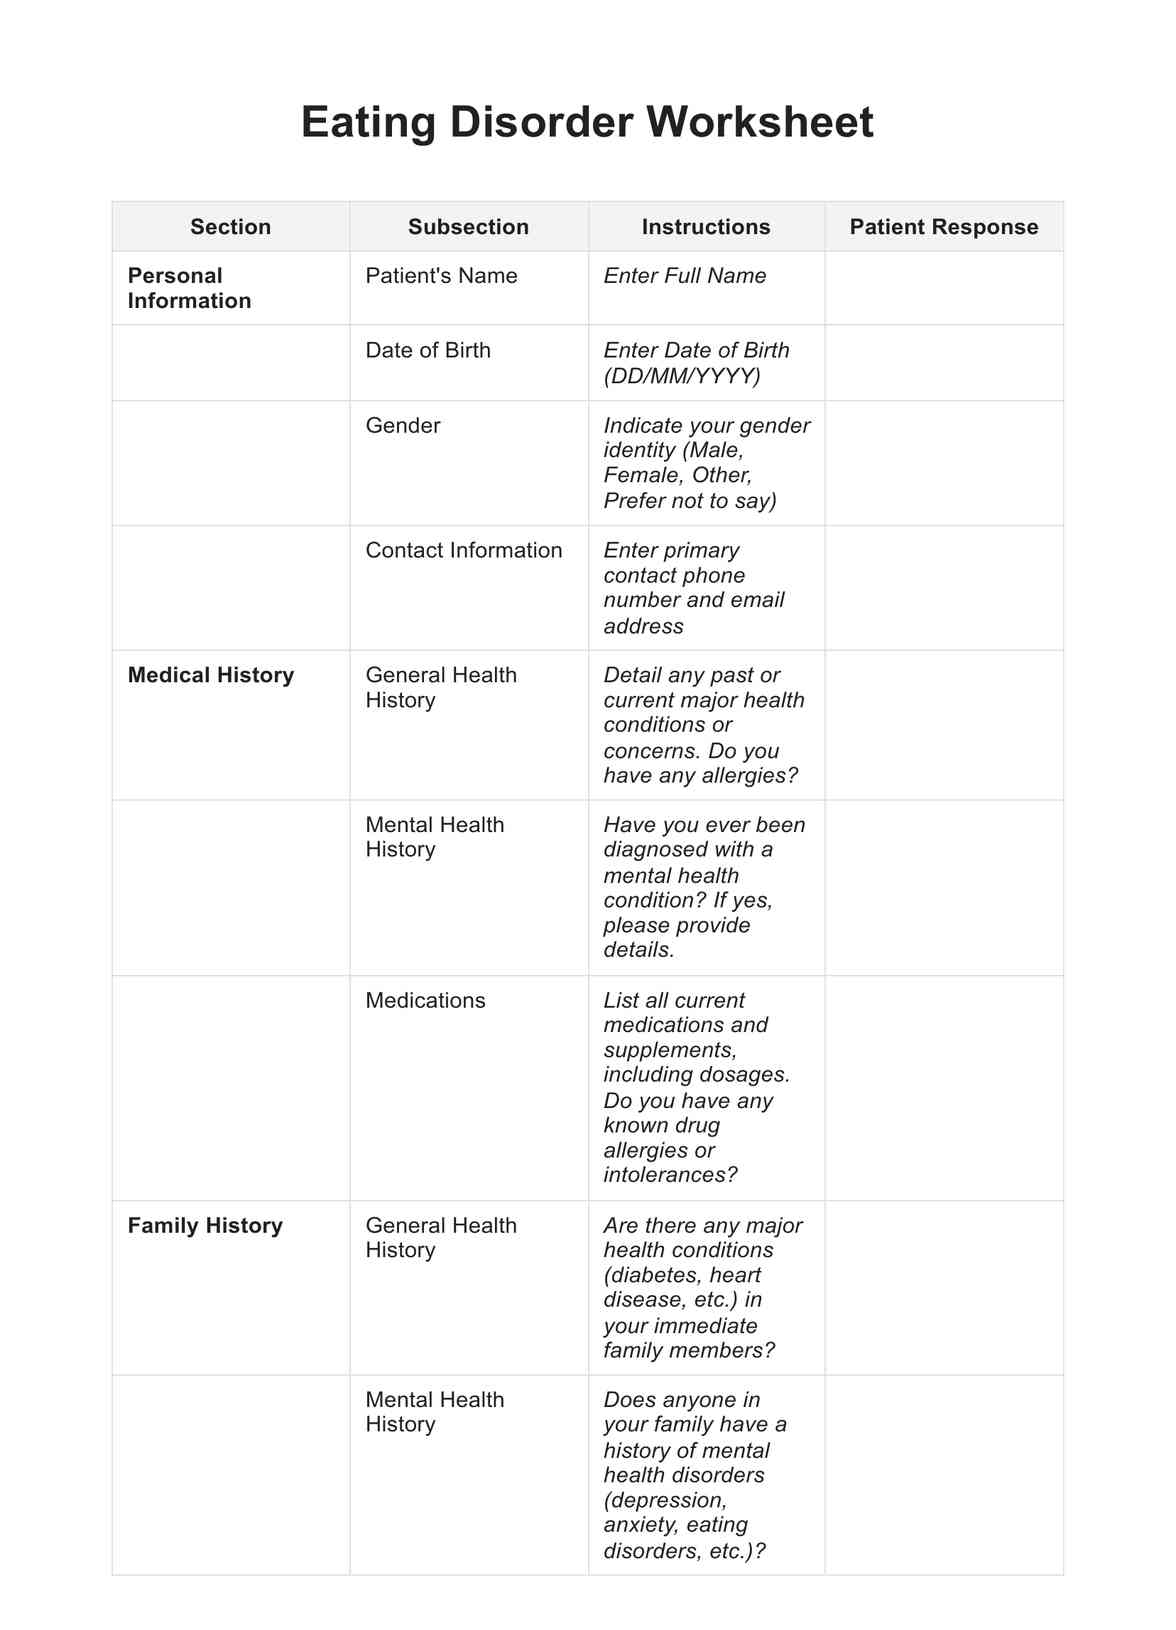 Eating Disorder Worksheet PDF Example